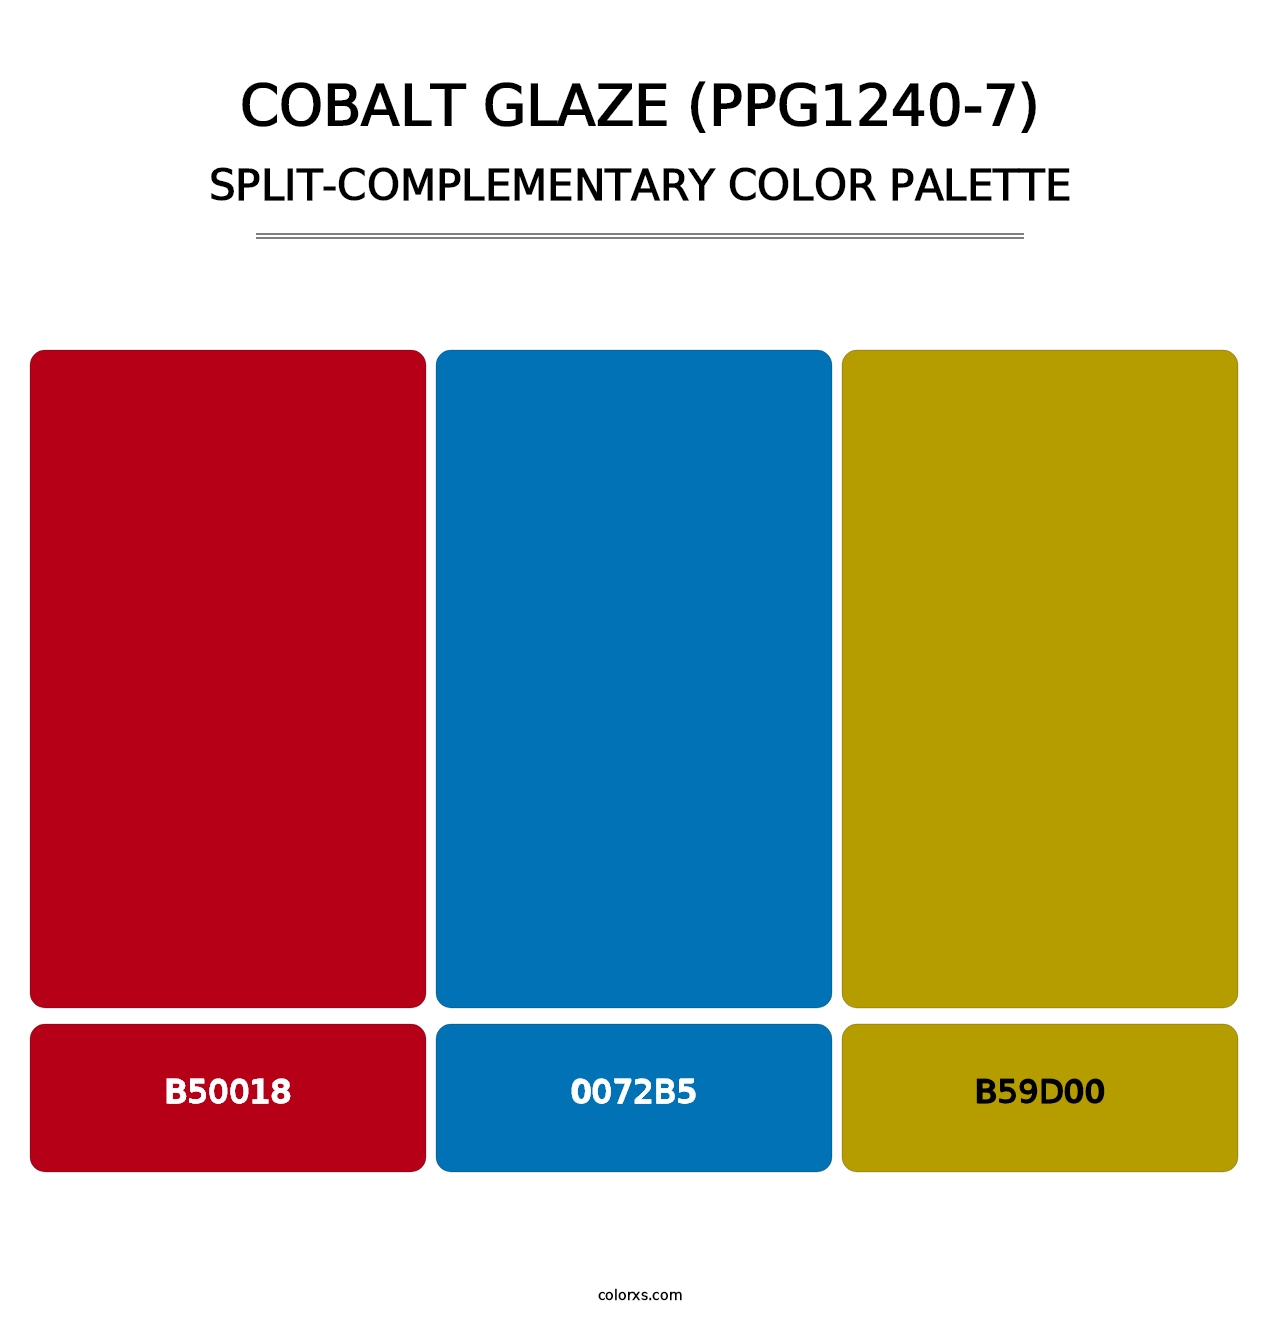 Cobalt Glaze (PPG1240-7) - Split-Complementary Color Palette